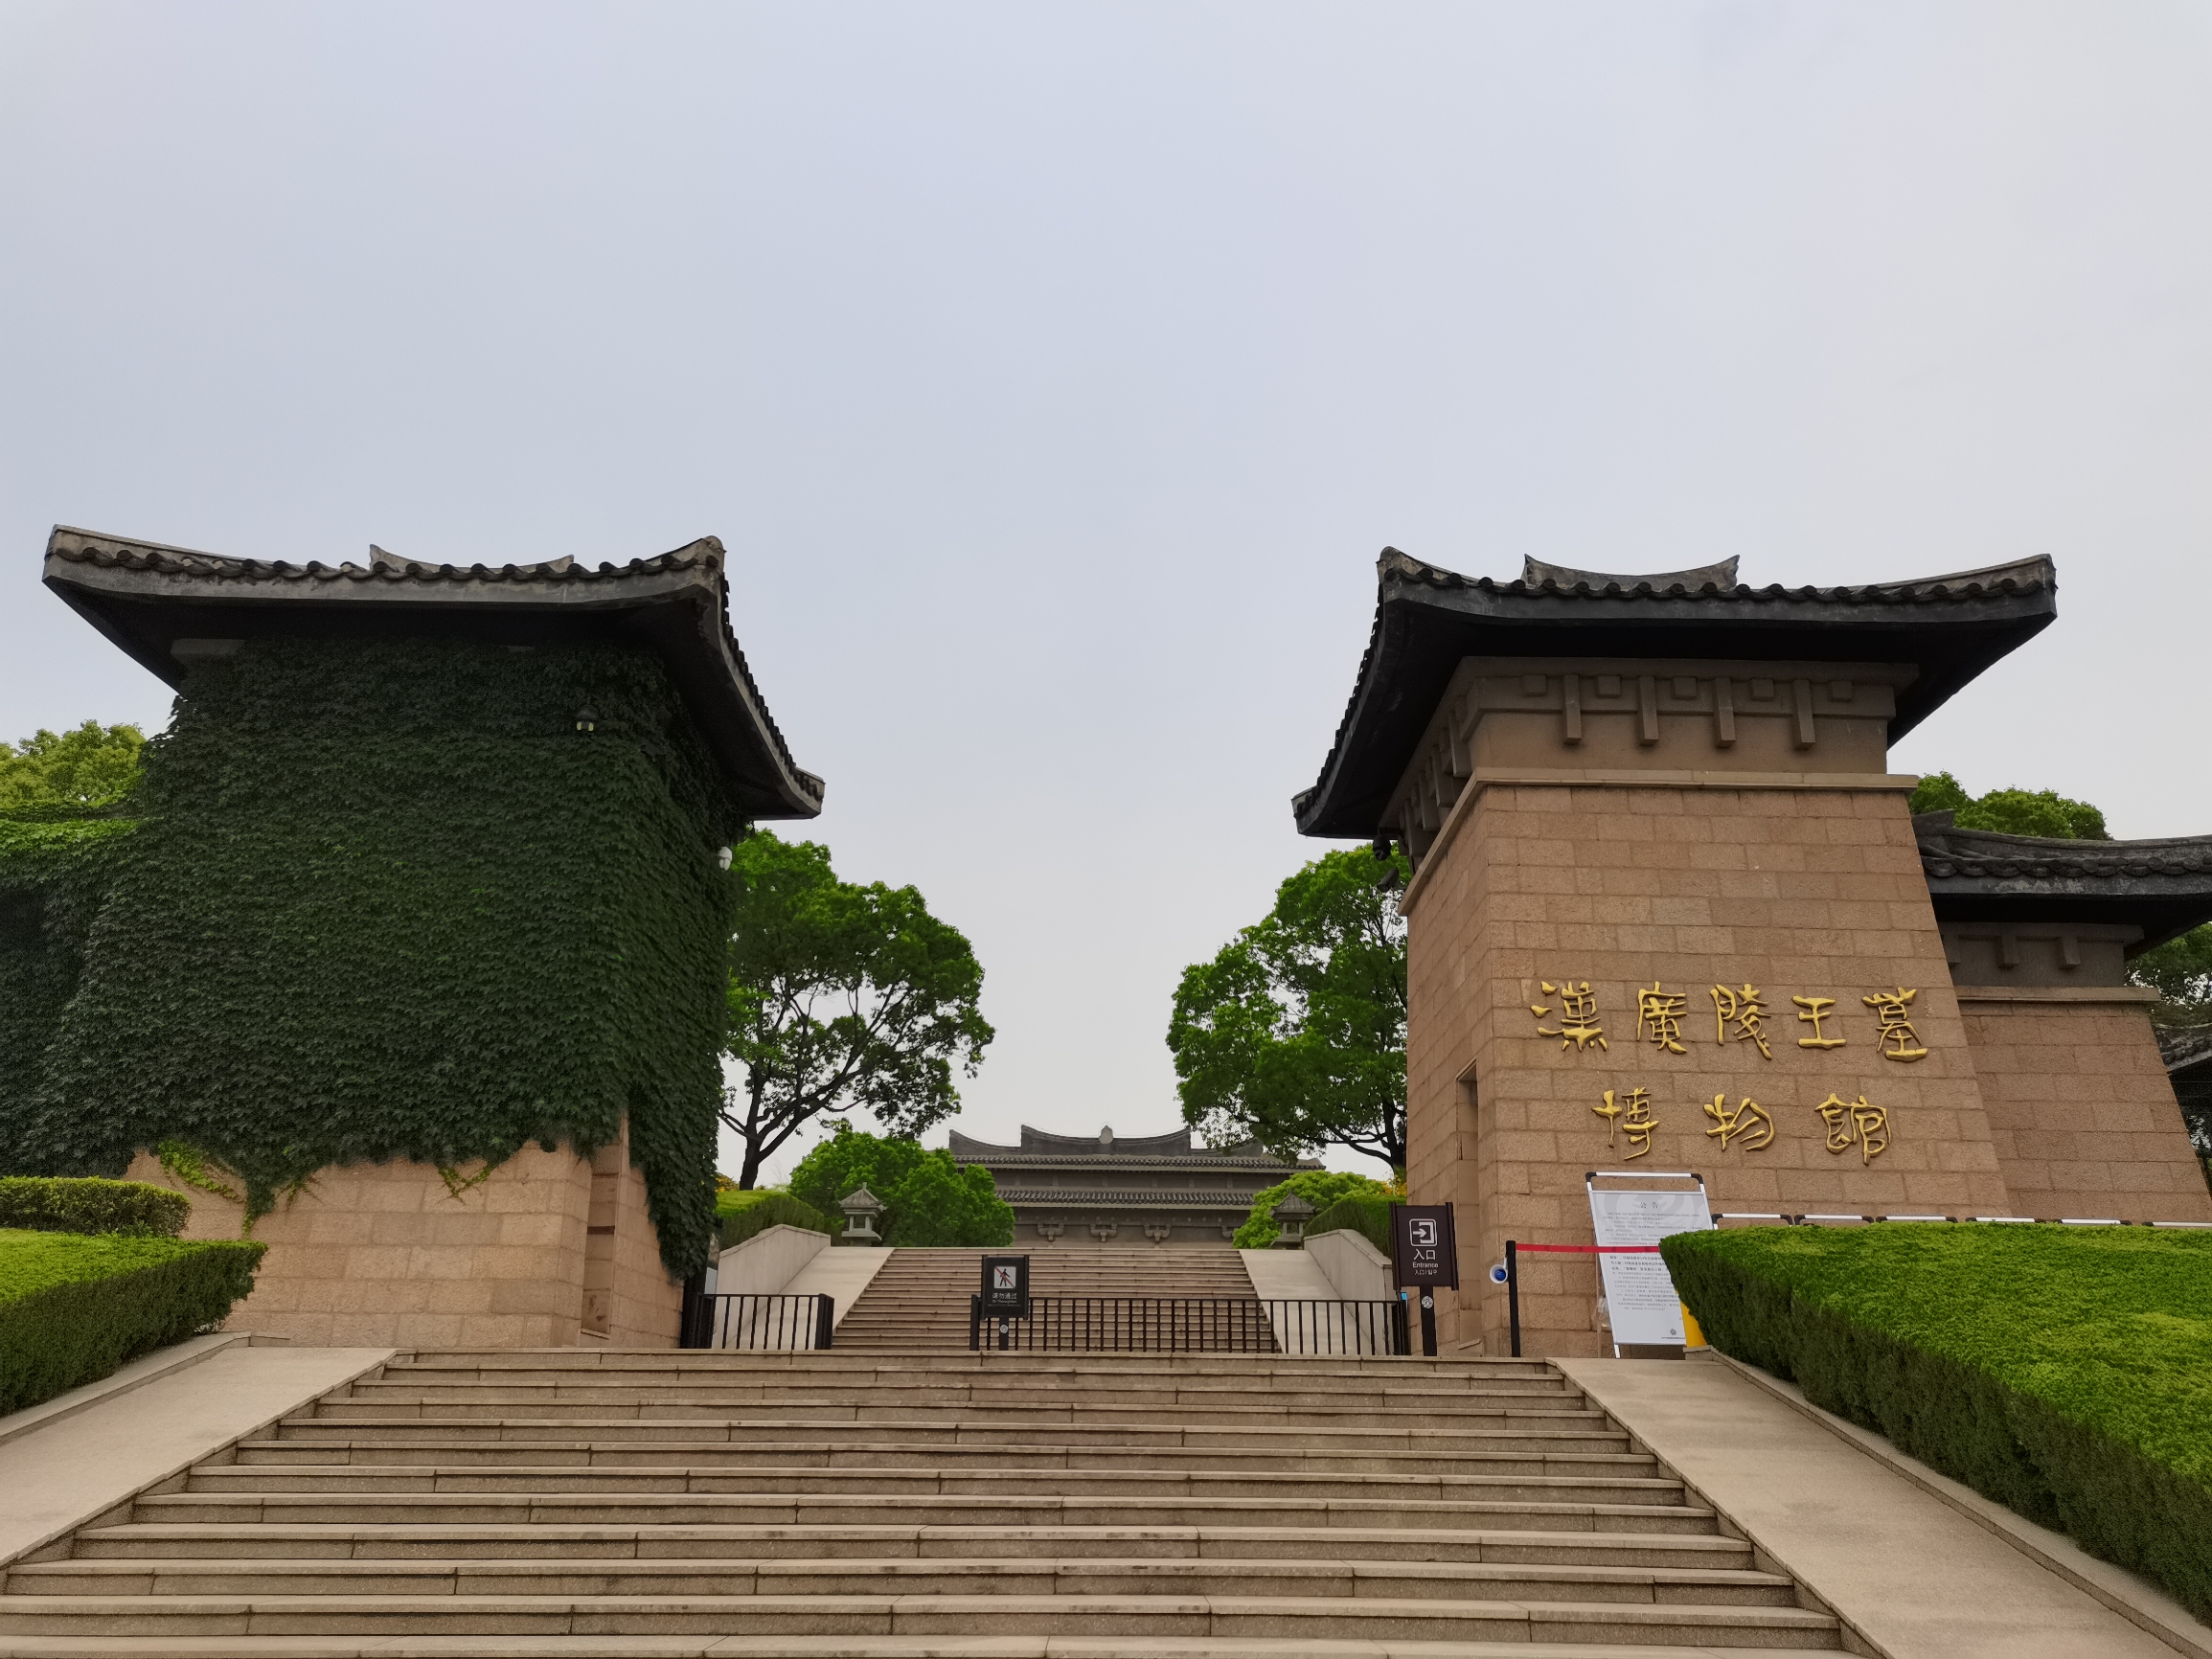 扬州汉广陵王墓博物馆之一